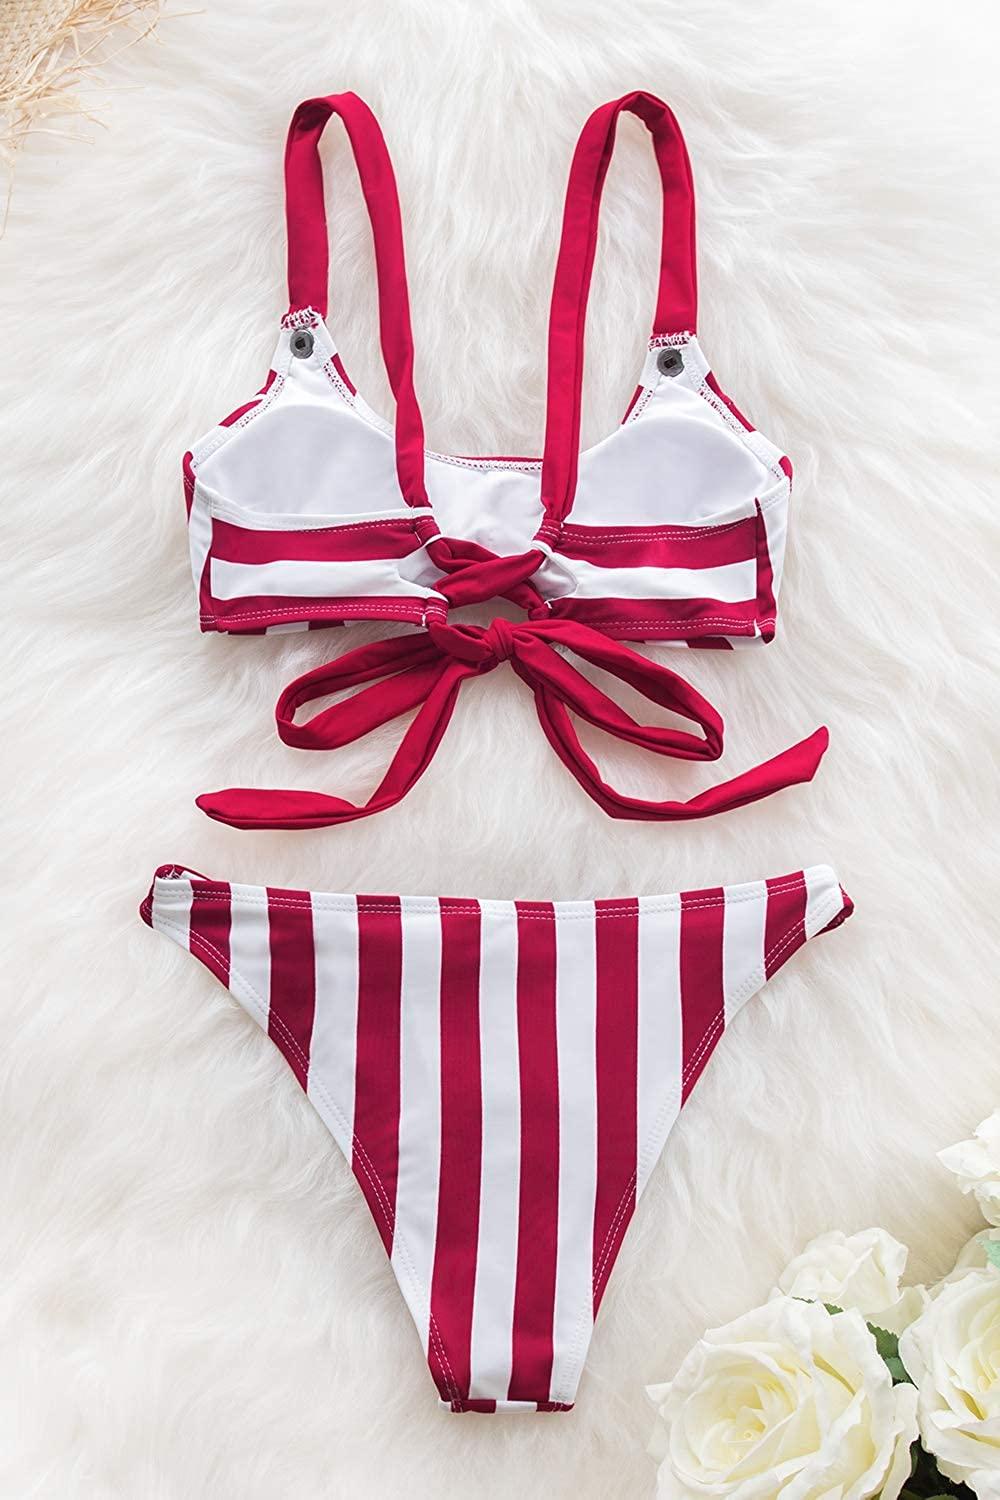 Selected image for CUPSHE Ženski kupaći kostim D176 crveno-beli